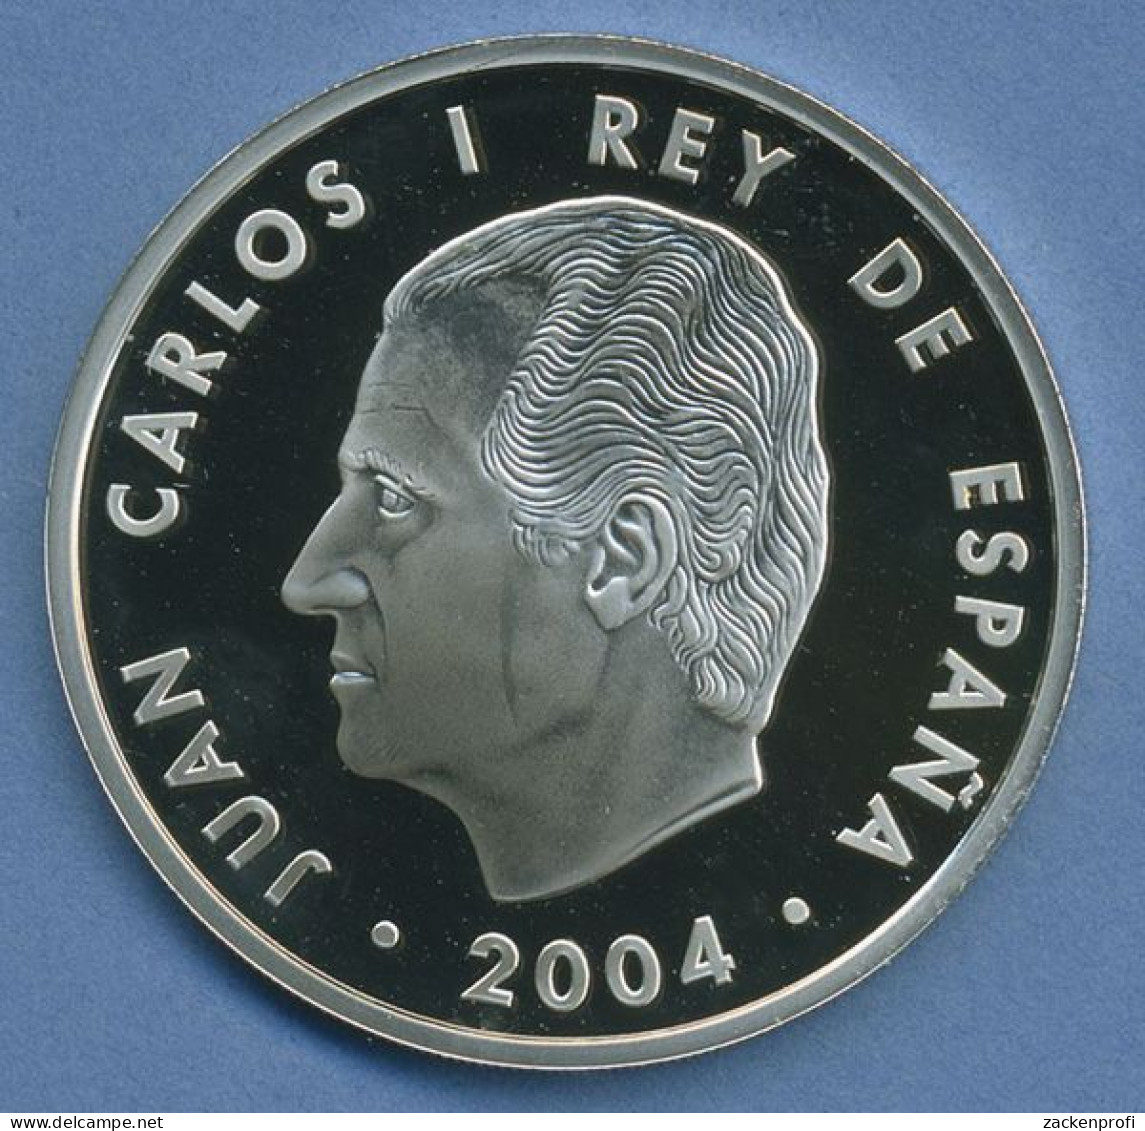 Spanien 10 Euro 2004 Europäische Union EU, Silber, KM 1099 PP (m4402) - Espagne